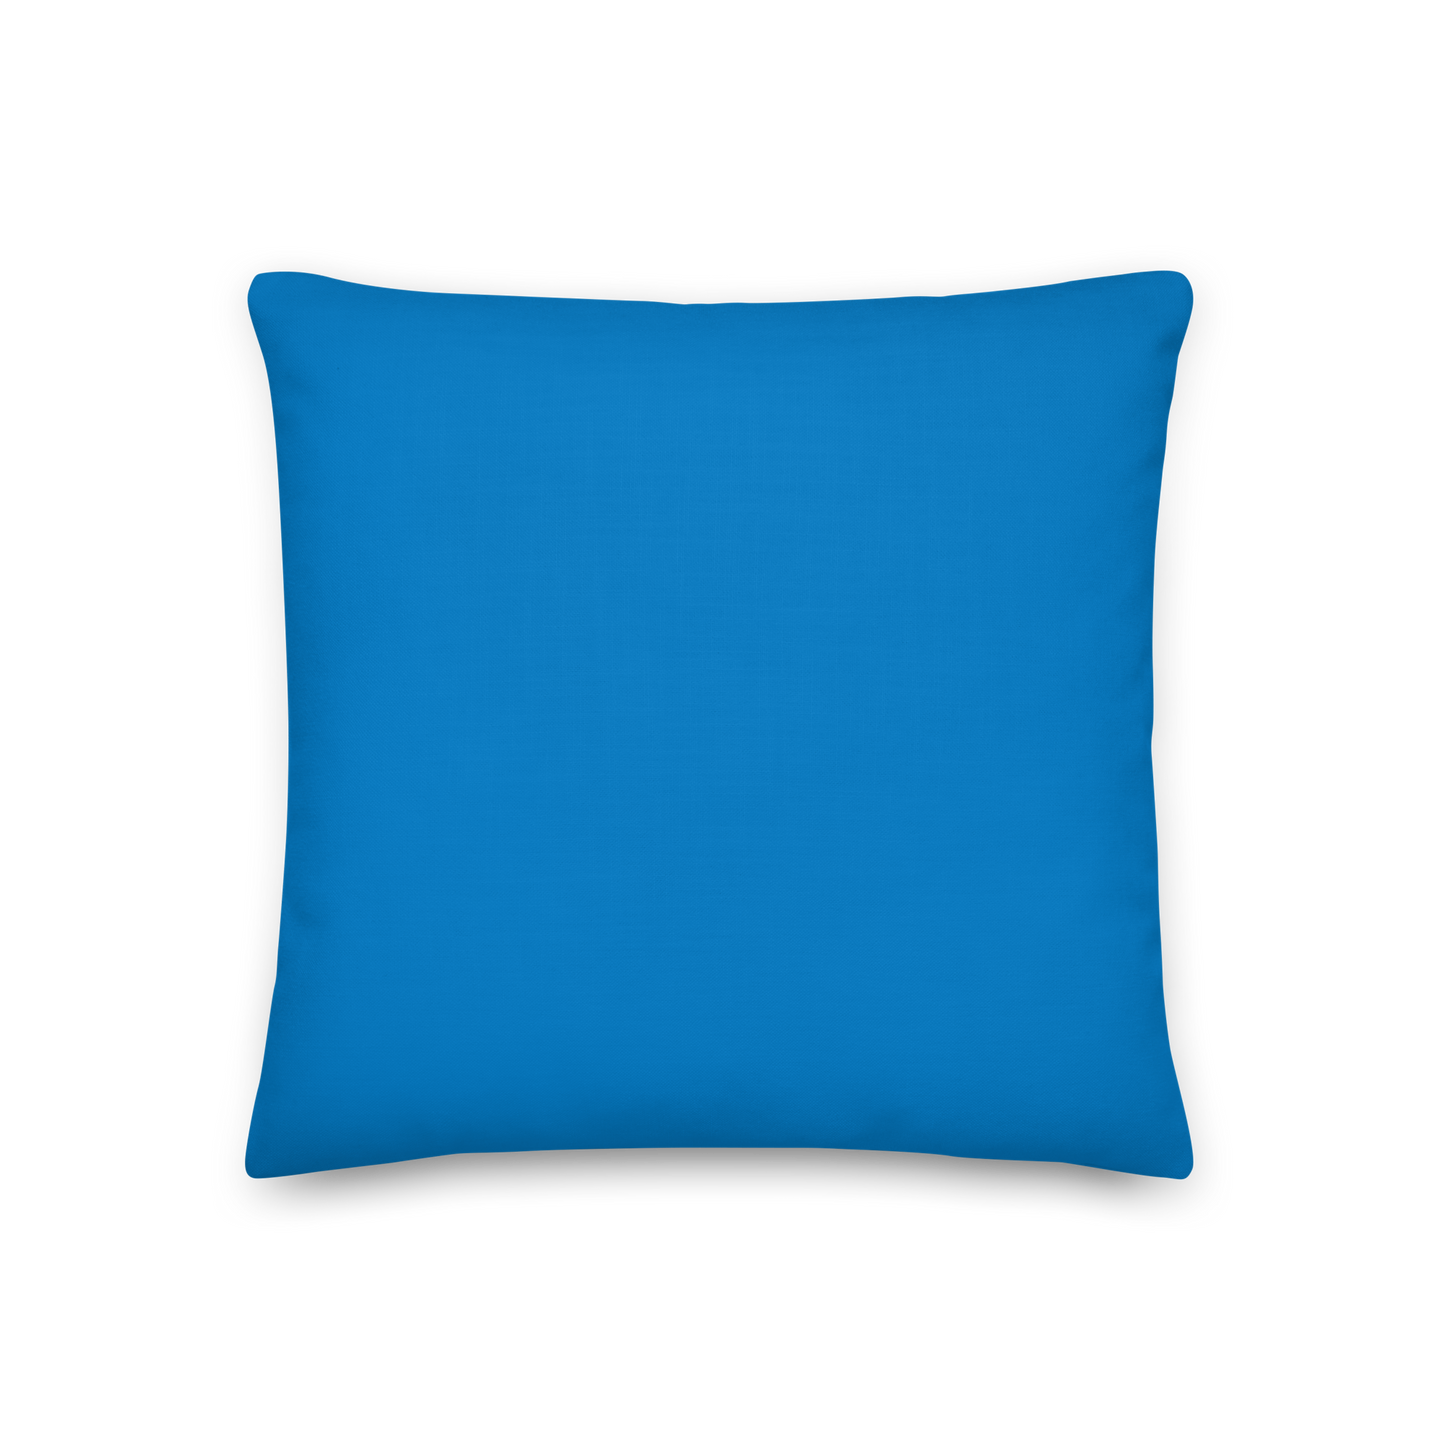 Blue Pillow